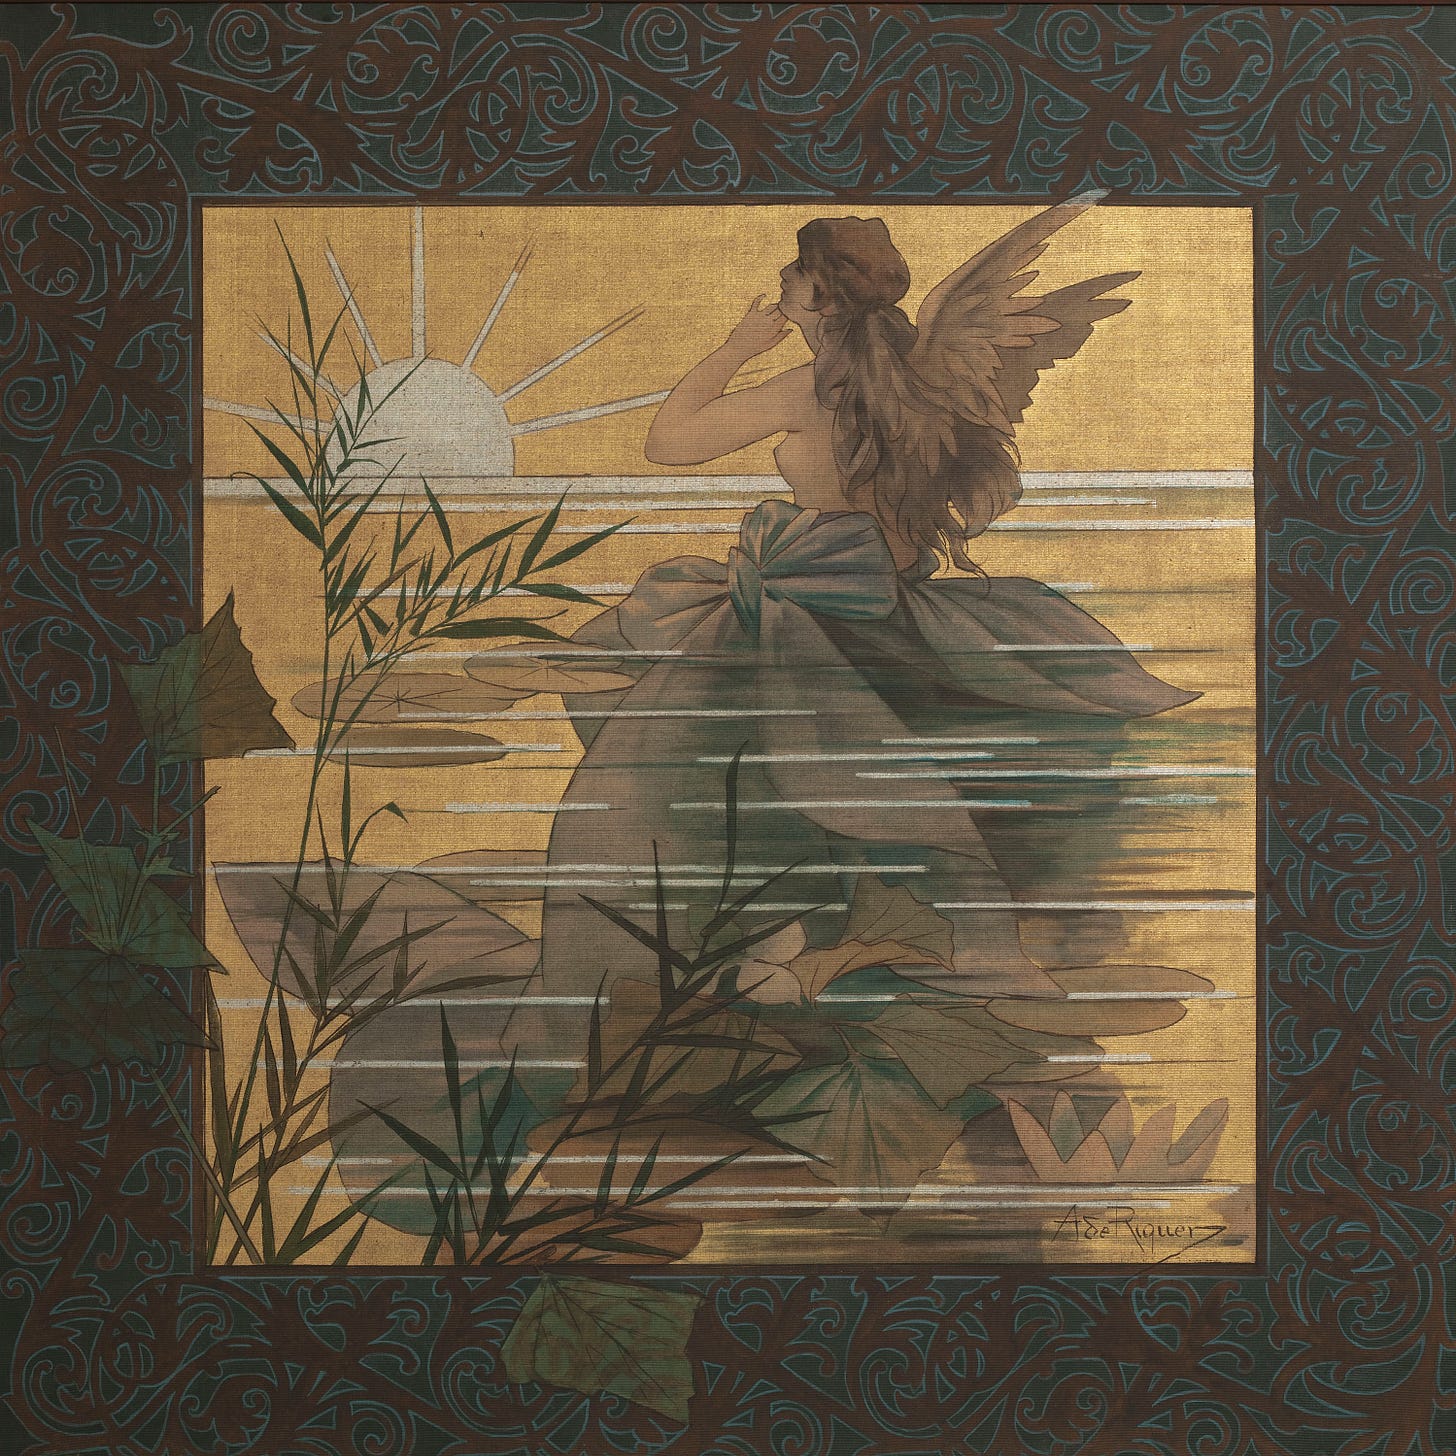 Alexandre de Riquer - Composició amb nimfa alada davant la sortida del sol - 1887